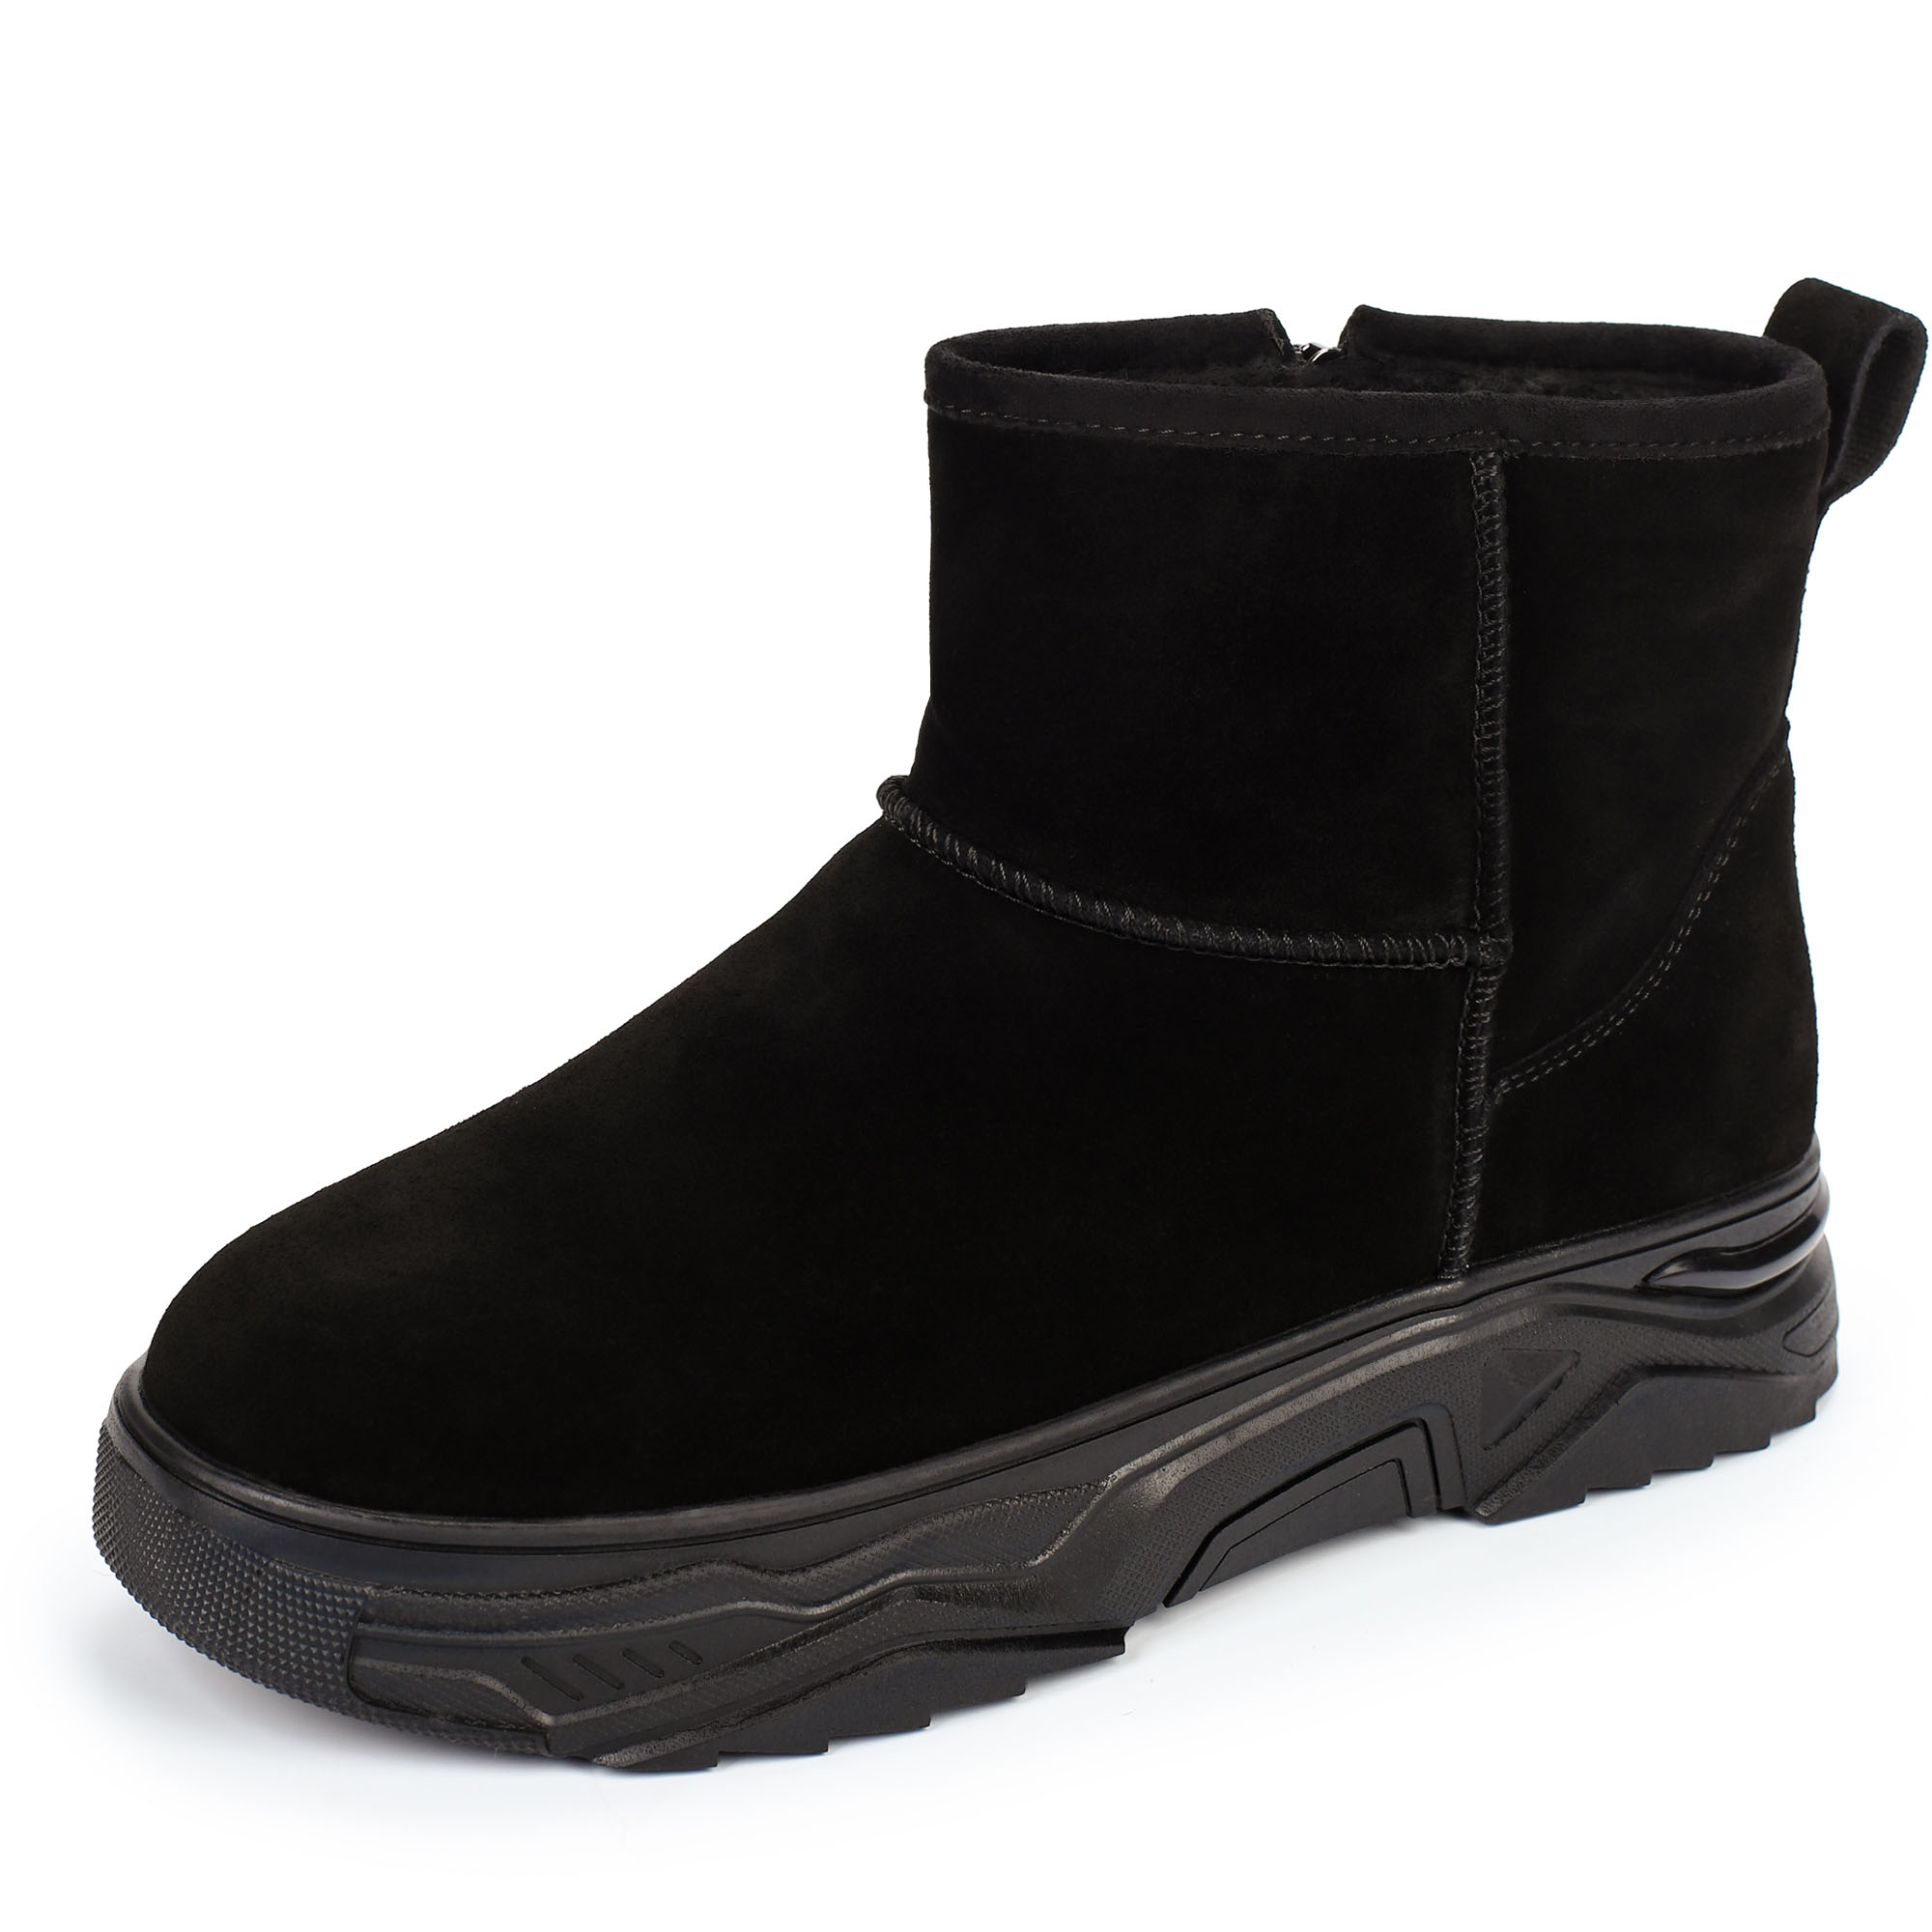 Ботинки Thomas Munz 234-445A-50202, цвет черный, размер 37 - фото 2